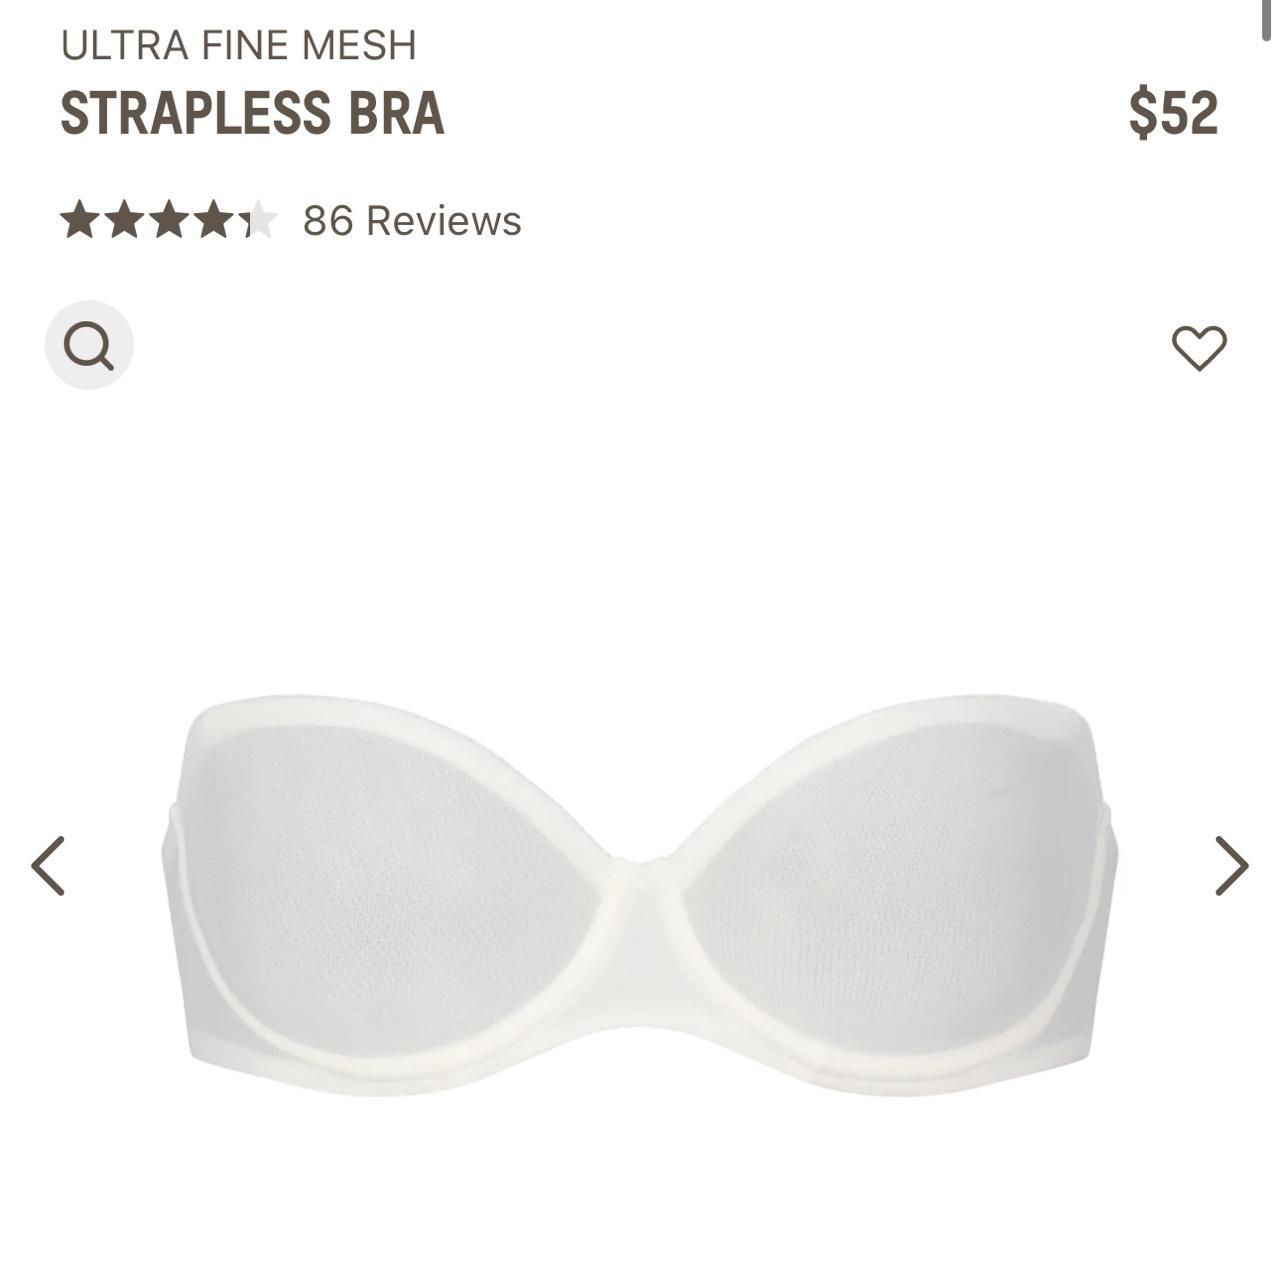 Skims ultra fine mesh strapless bra 🤍 34D - comes